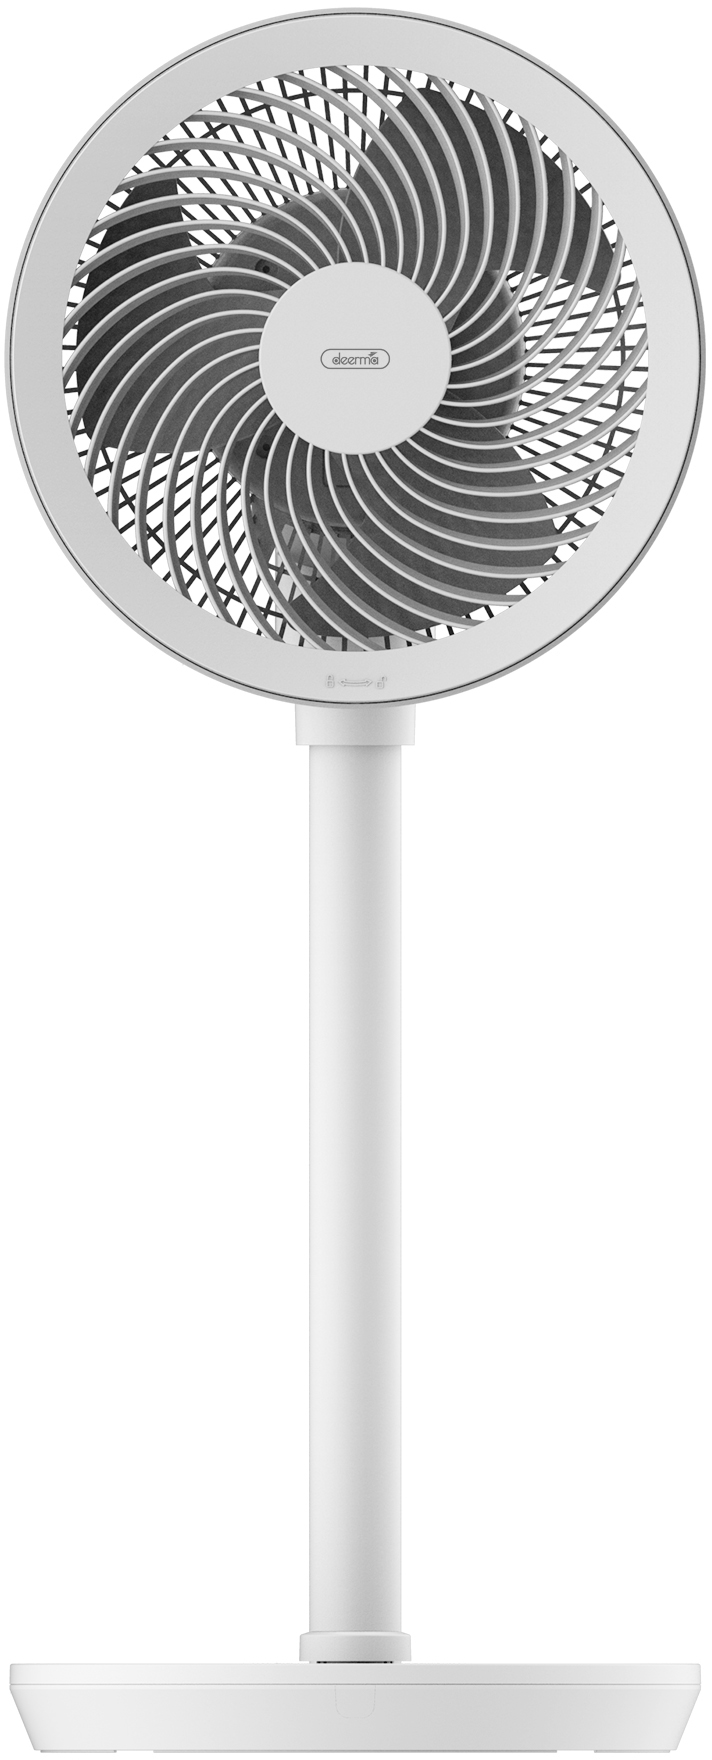 Вентилятор напольный; настольный Deerma FD200 белый вентилятор колонный настольный напольный solove f9 белый